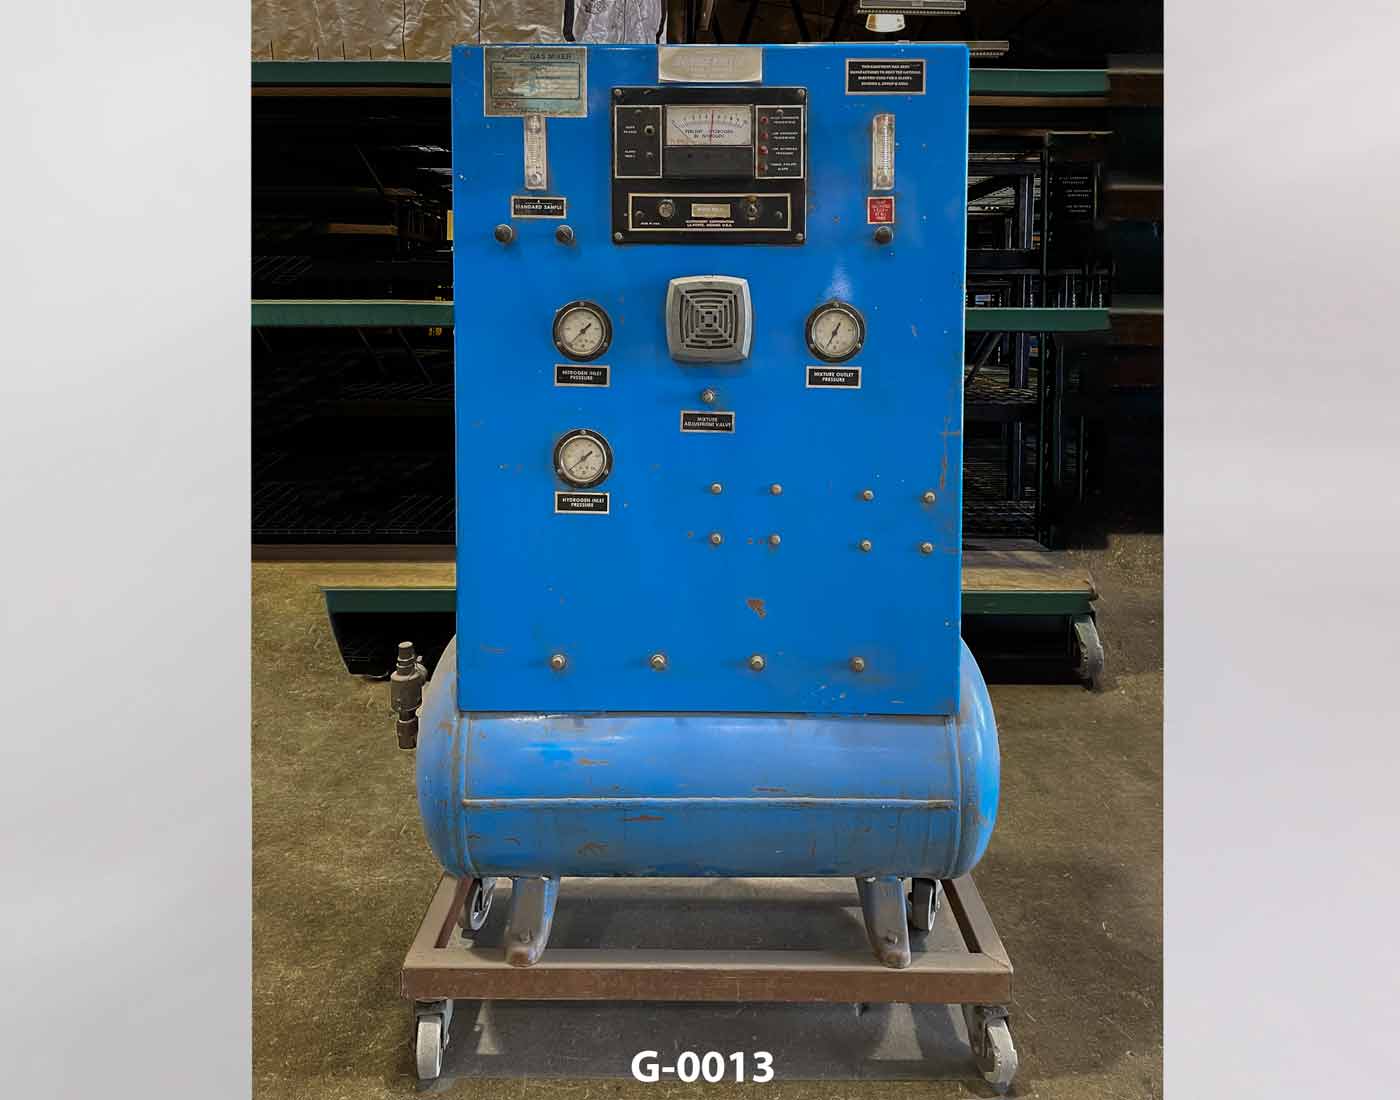 Gas Mixer Console G-0013